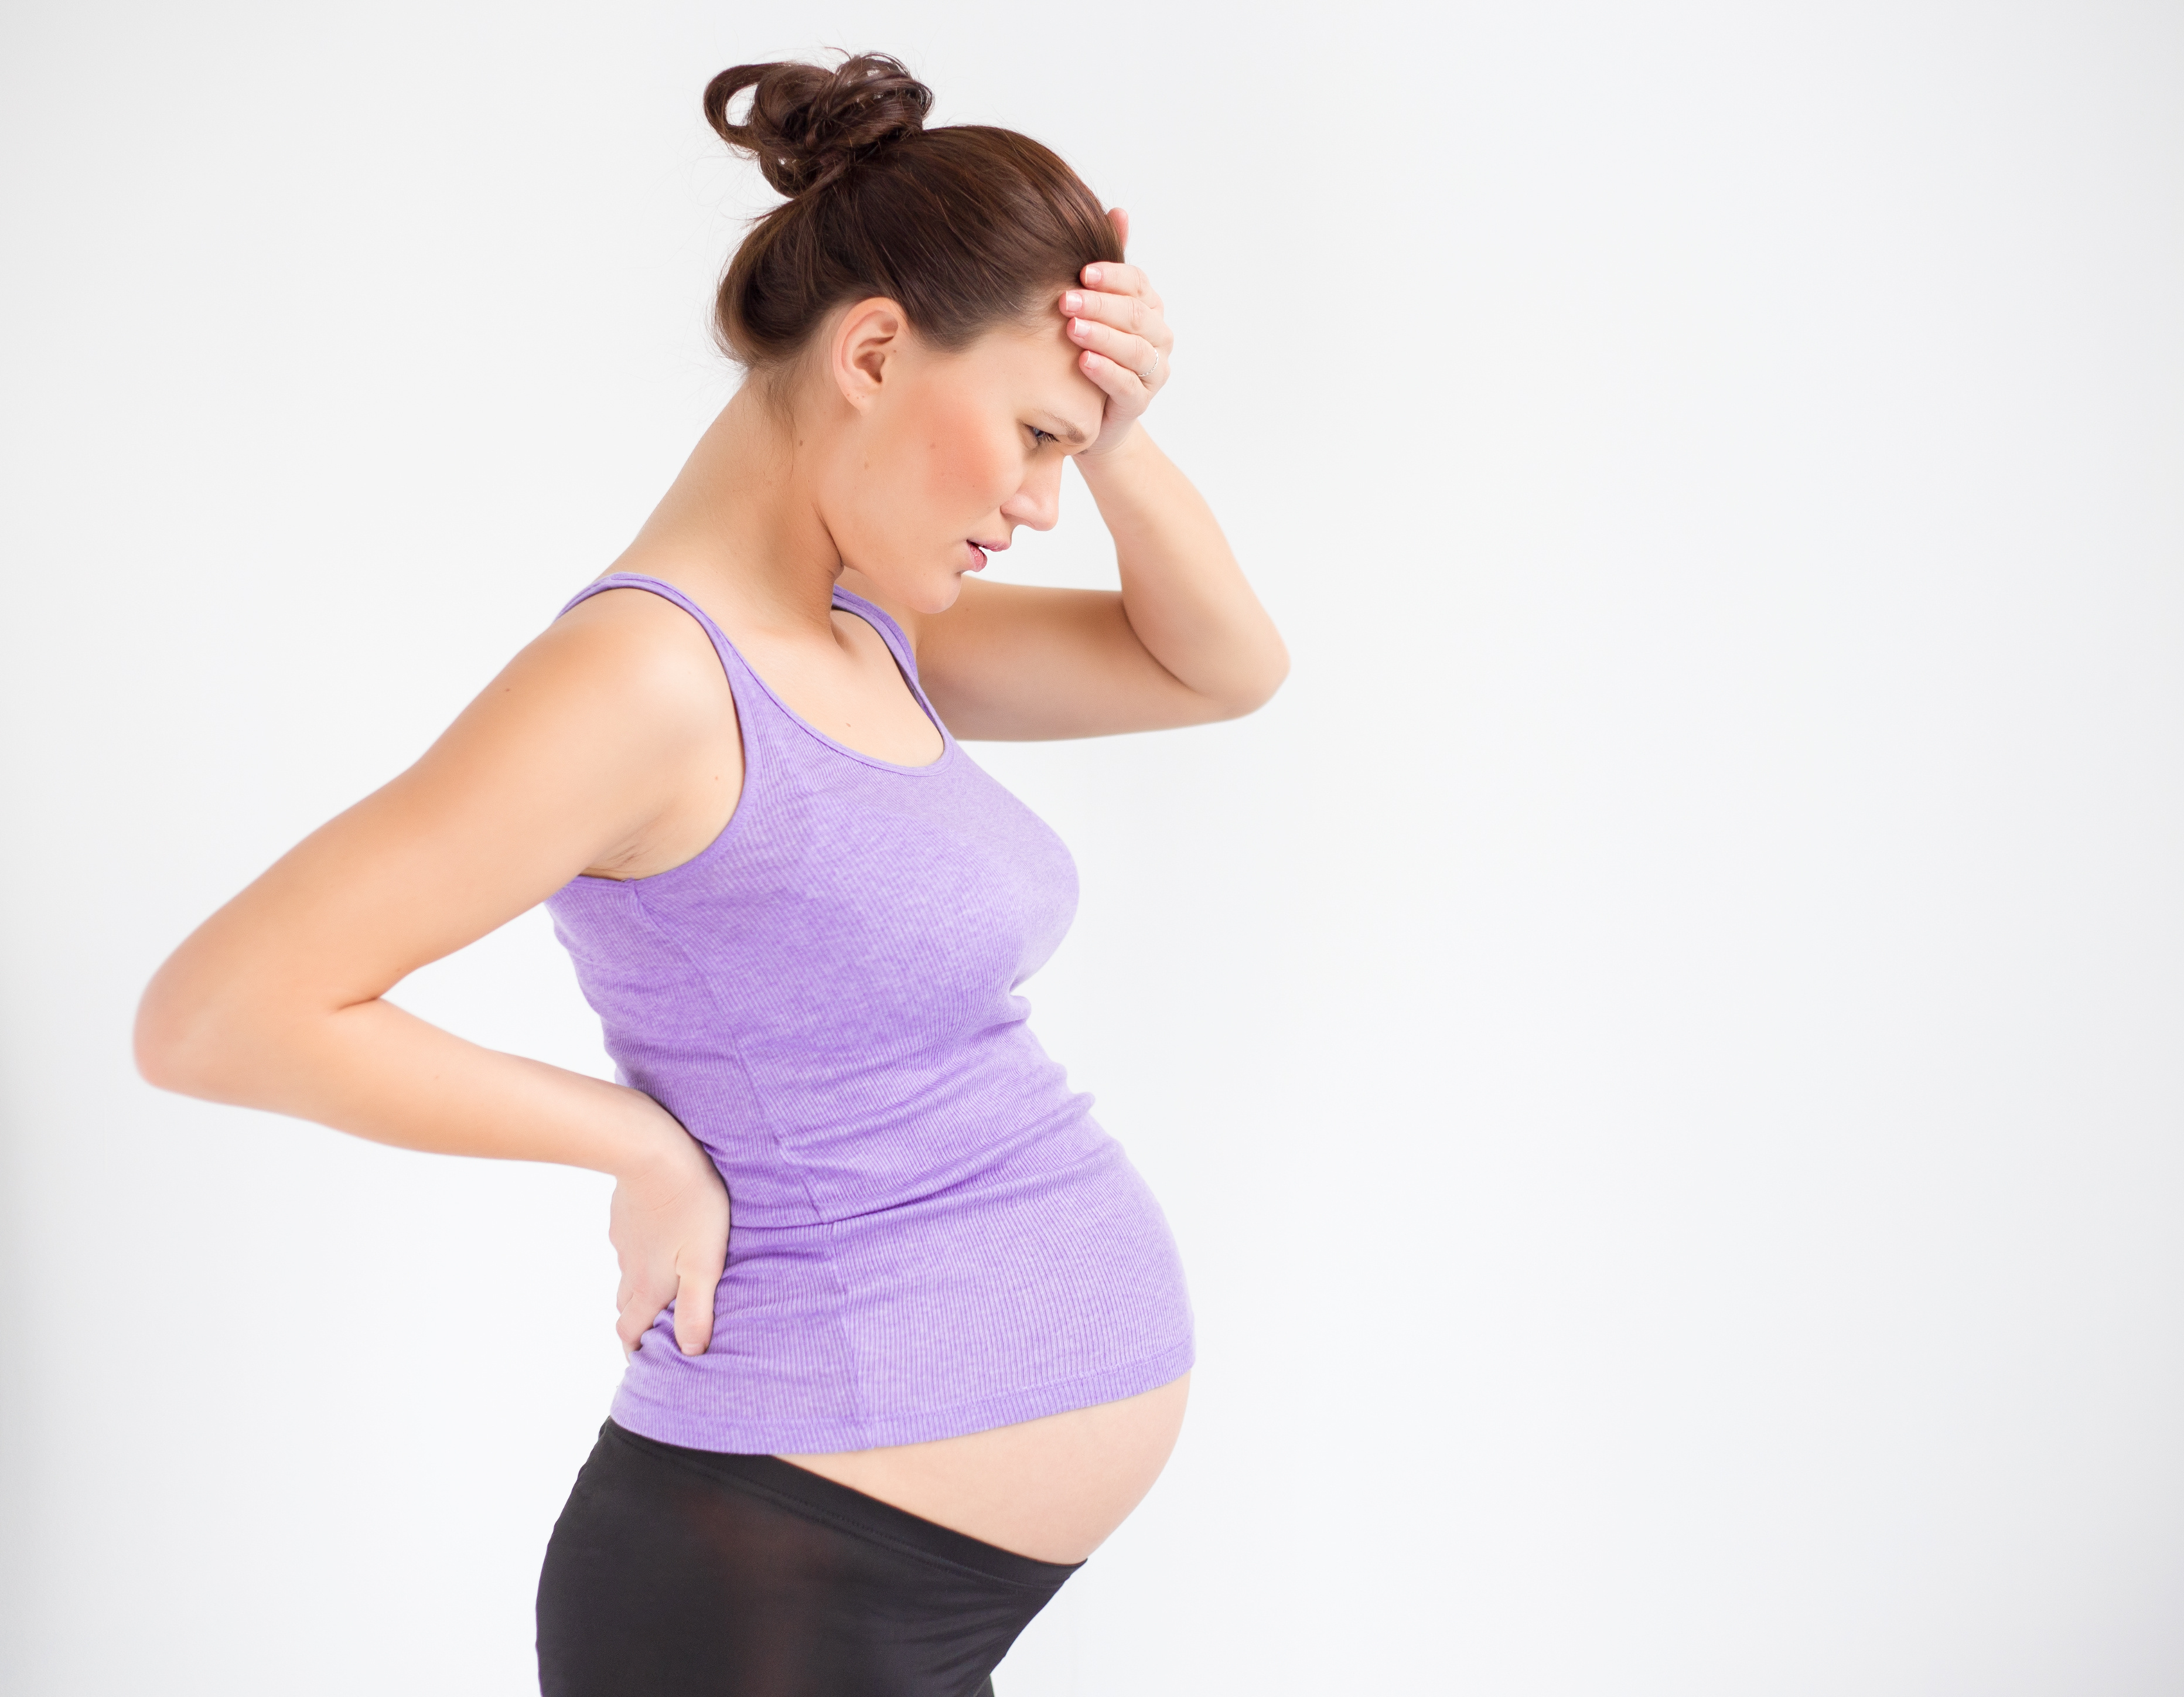 Почему у беременных кружится